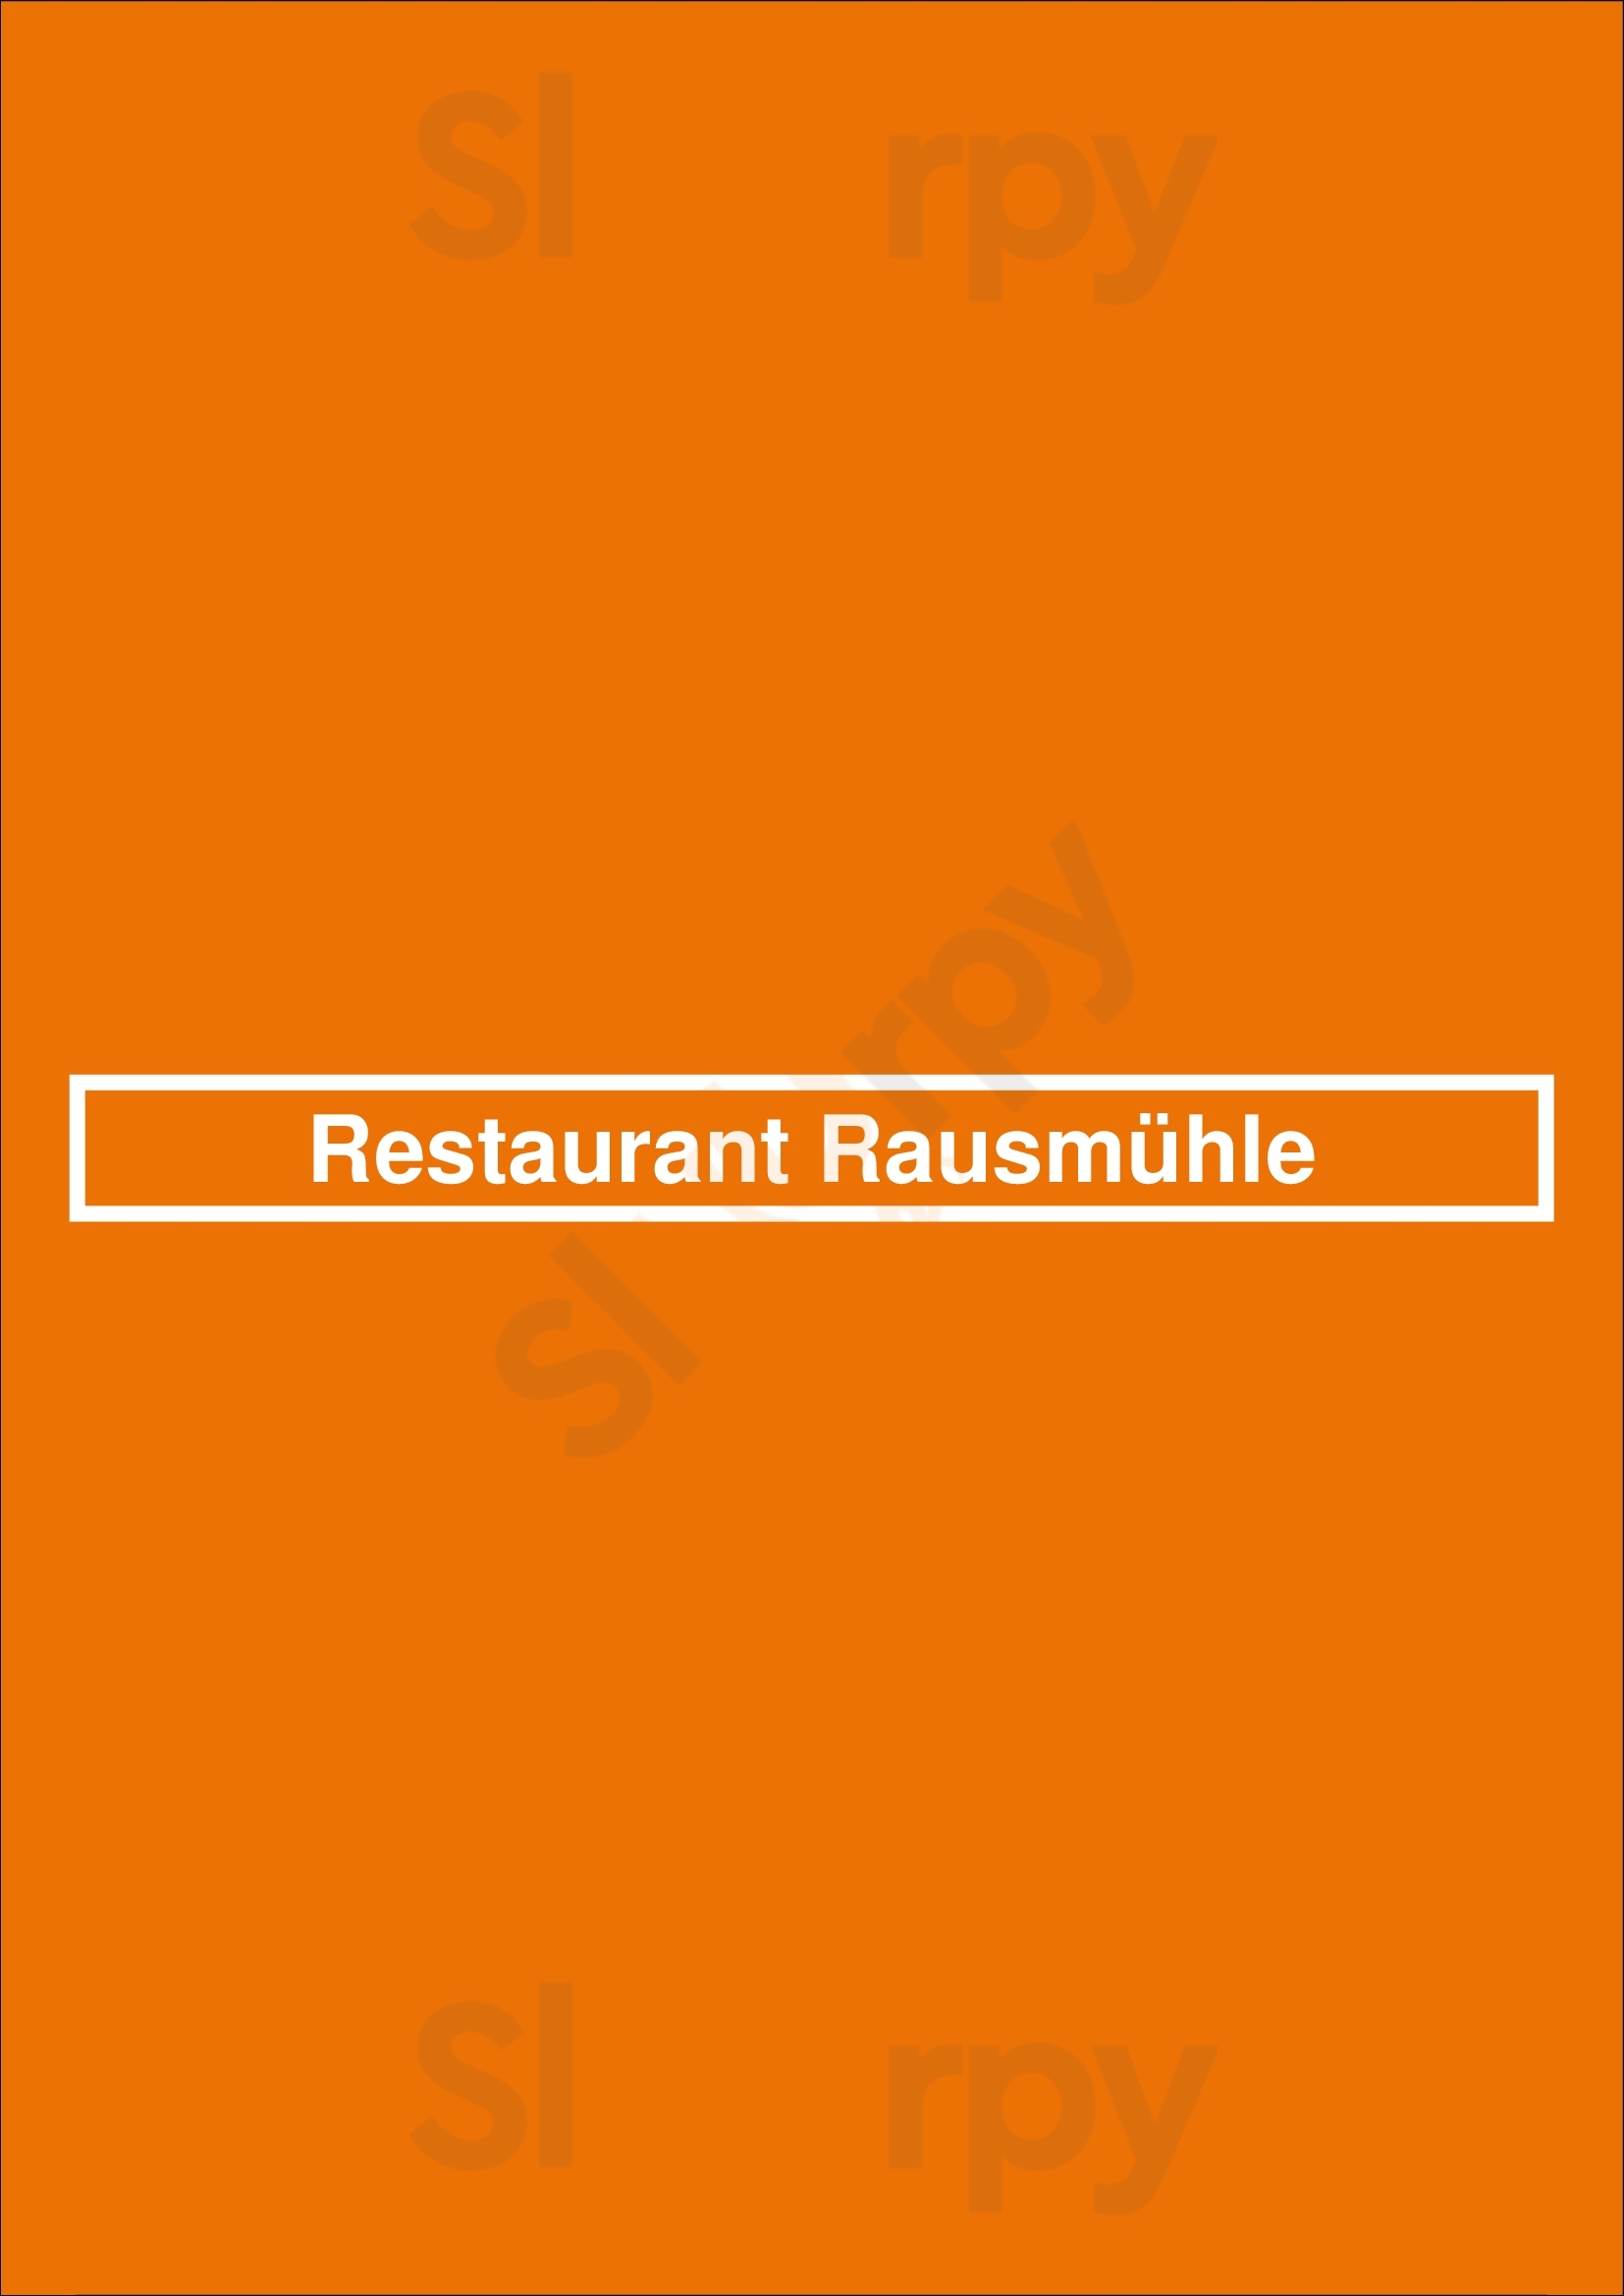 Restaurant Rausmühle Wermelskirchen Menu - 1